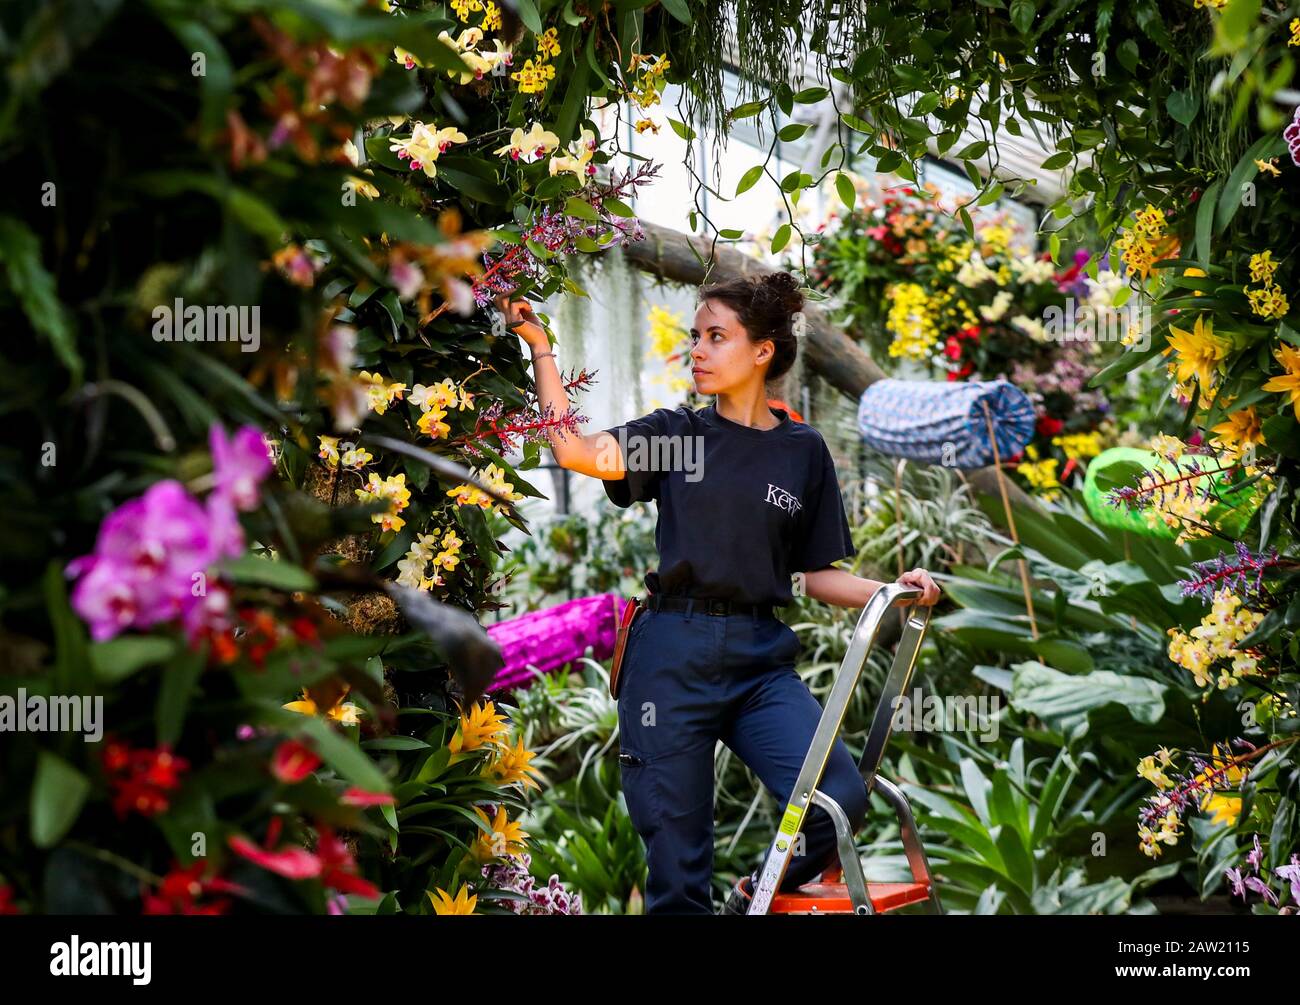 Alice McKeever aggiunge il tocco finale ad alcune delle 5.000 orchidee colorate e a centinaia di altre piante tropicali nel Festival delle Orchidee a tema Indonesia, all'interno del Conservatorio Prince of Wales presso i Royal Botanic Gardens di Kew, nella zona ovest di Londra. Foto Stock